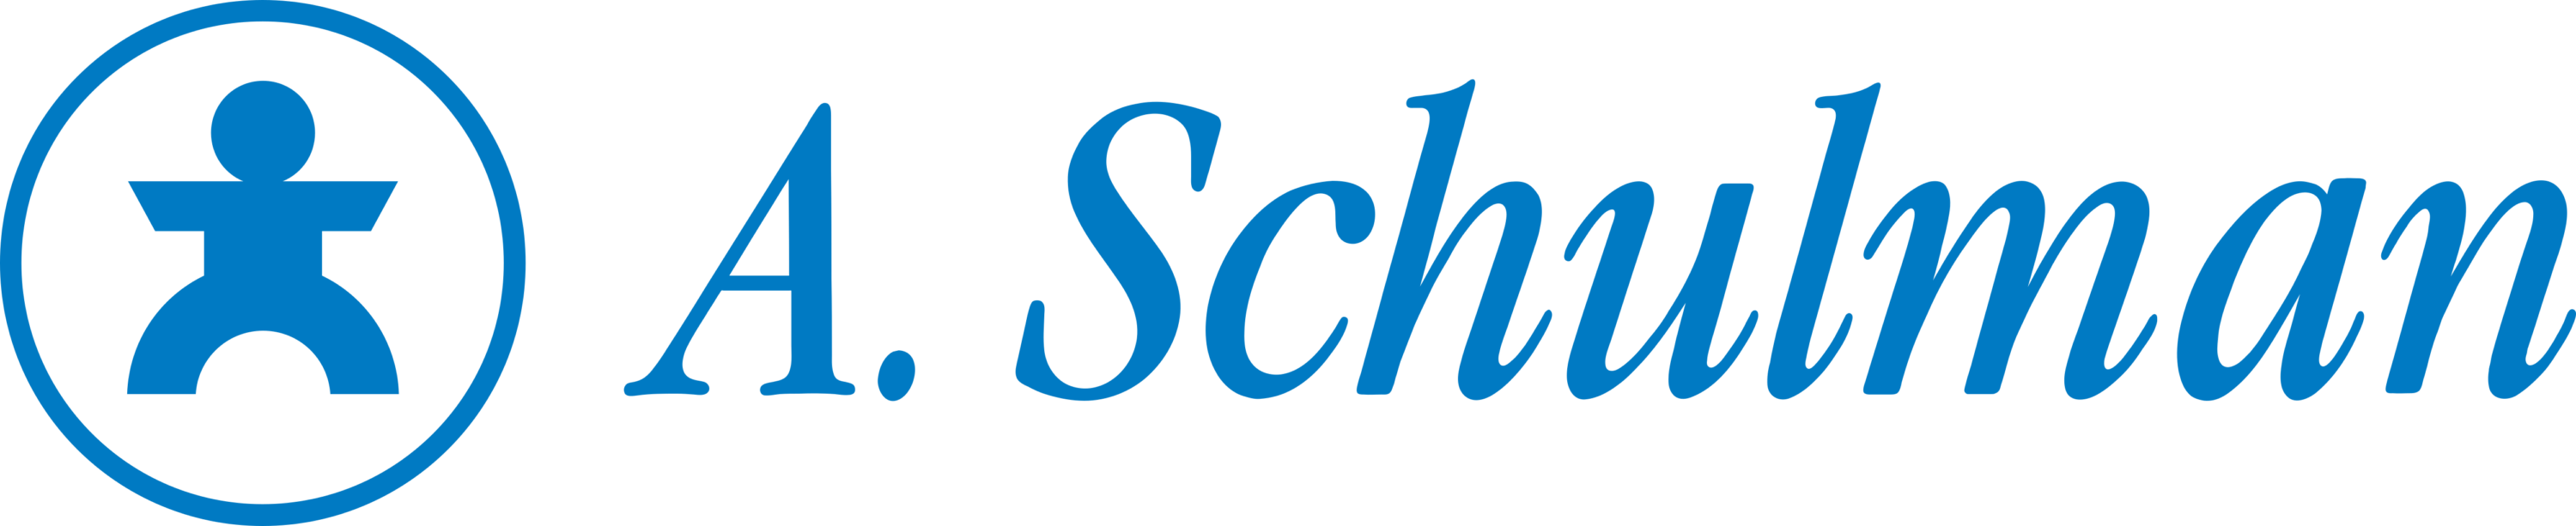 A.Schulman Logo